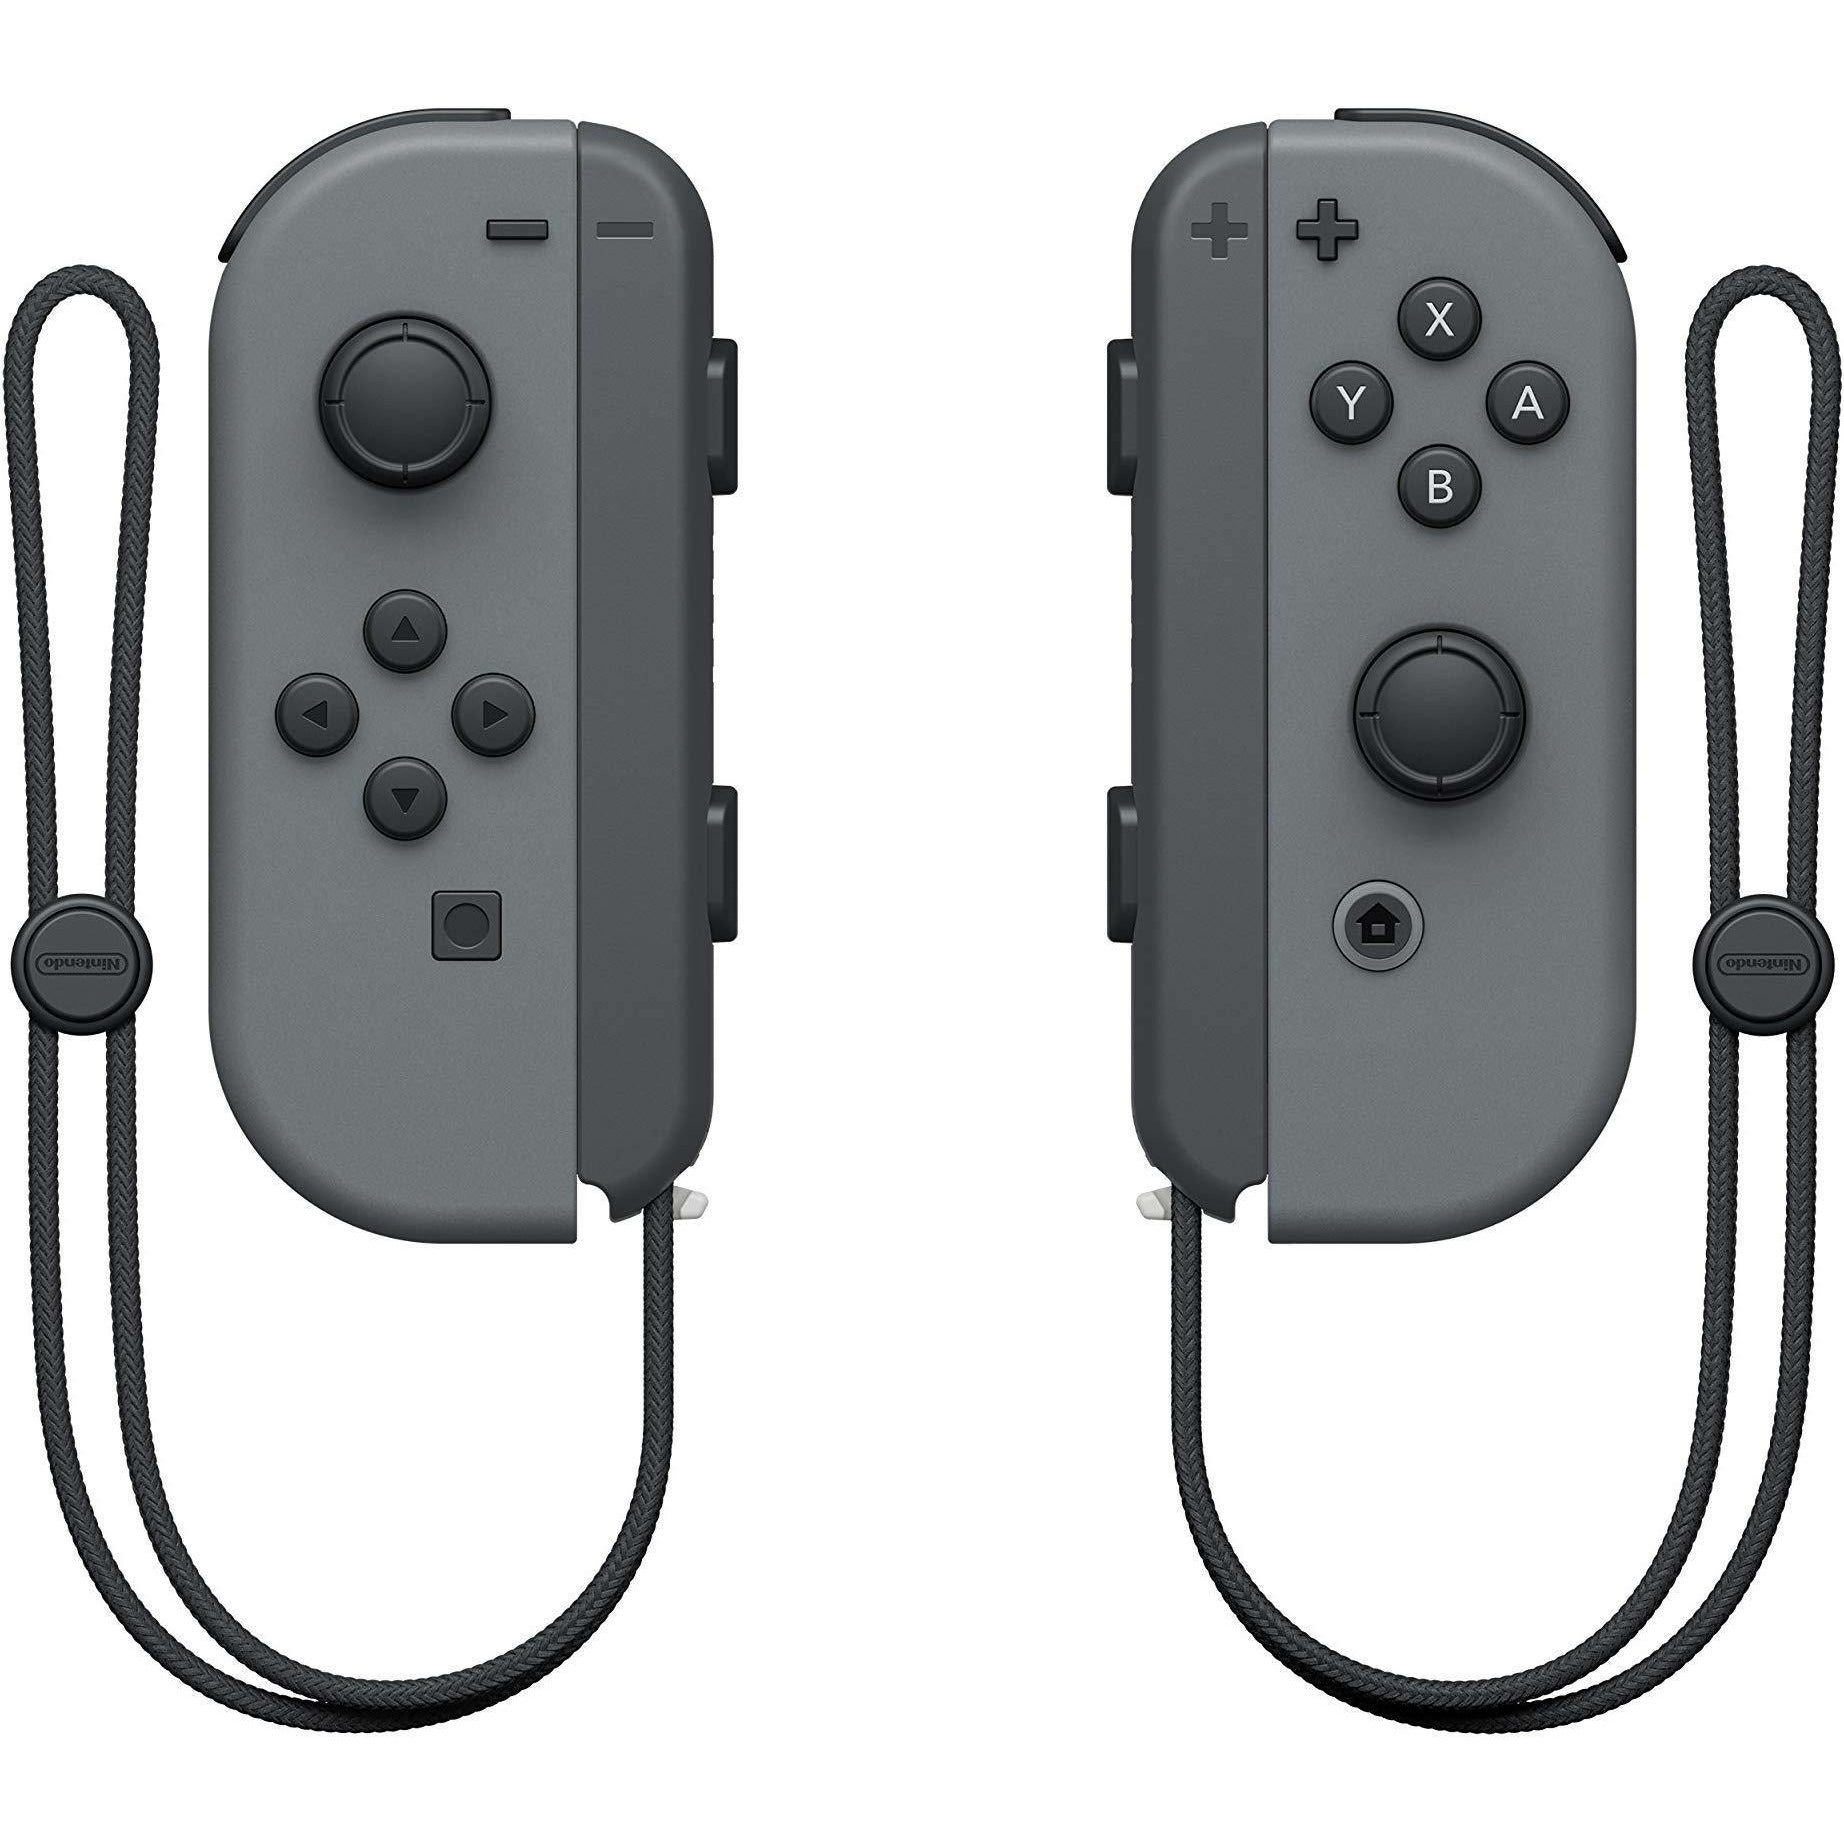 Nuevos Joy-Con amarillos para la Nintendo Switch y cargador con pilas